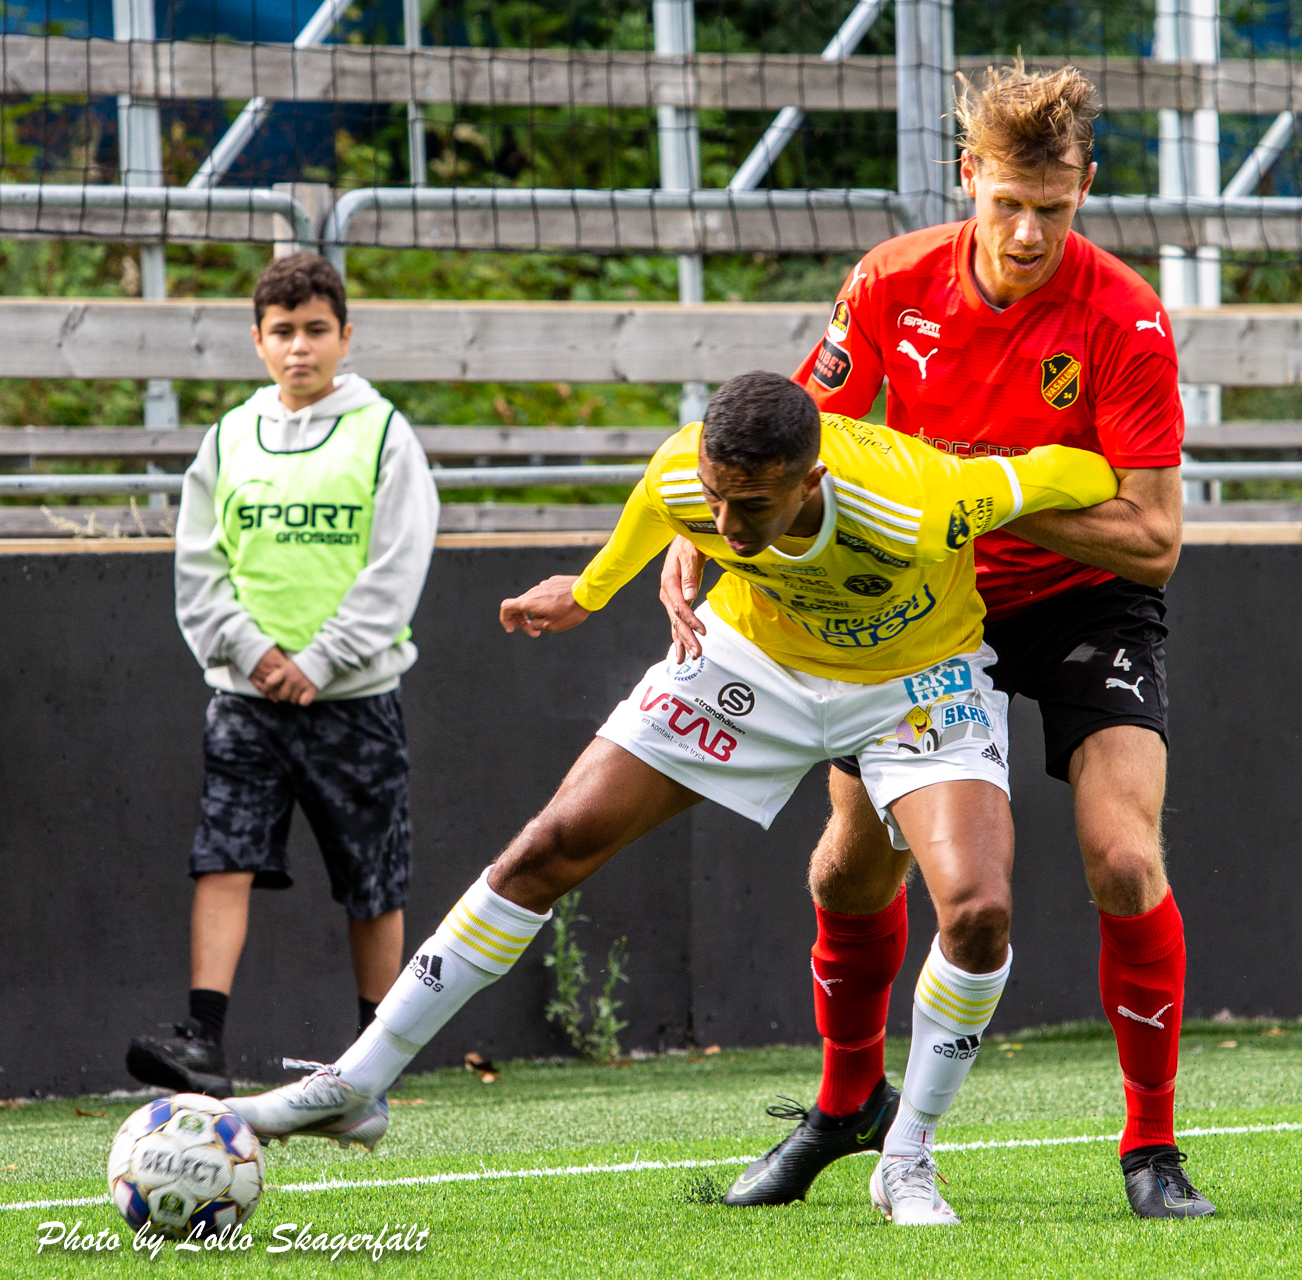 Förlust för U21 mot Elfsborg i Agudas debut